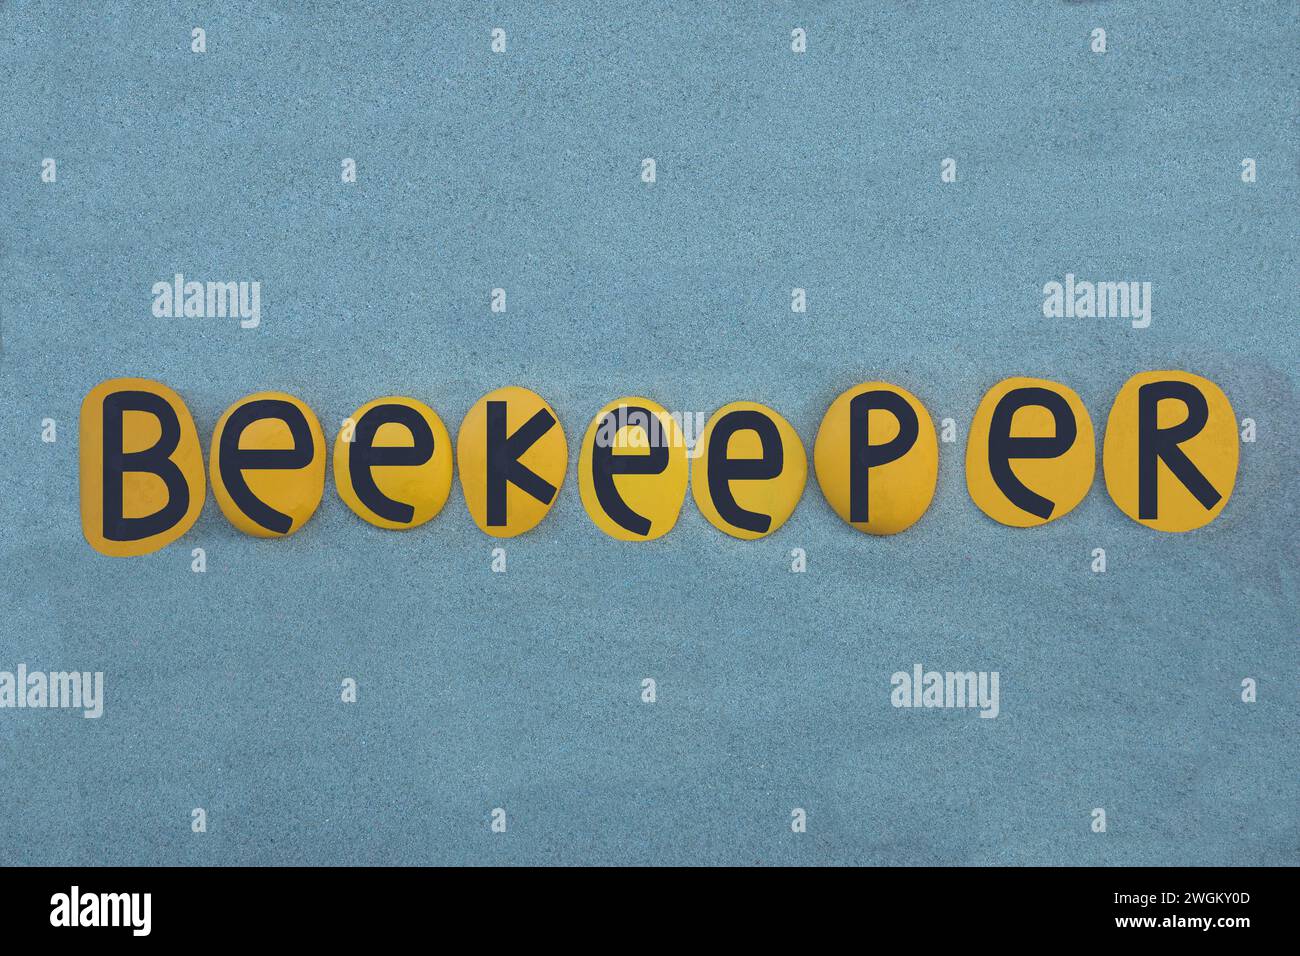 Apicoltore, una persona che tiene api mellifere, una professione nota come apicoltura, testo creativo composto da lettere gialle e nere su sabbia verde Foto Stock